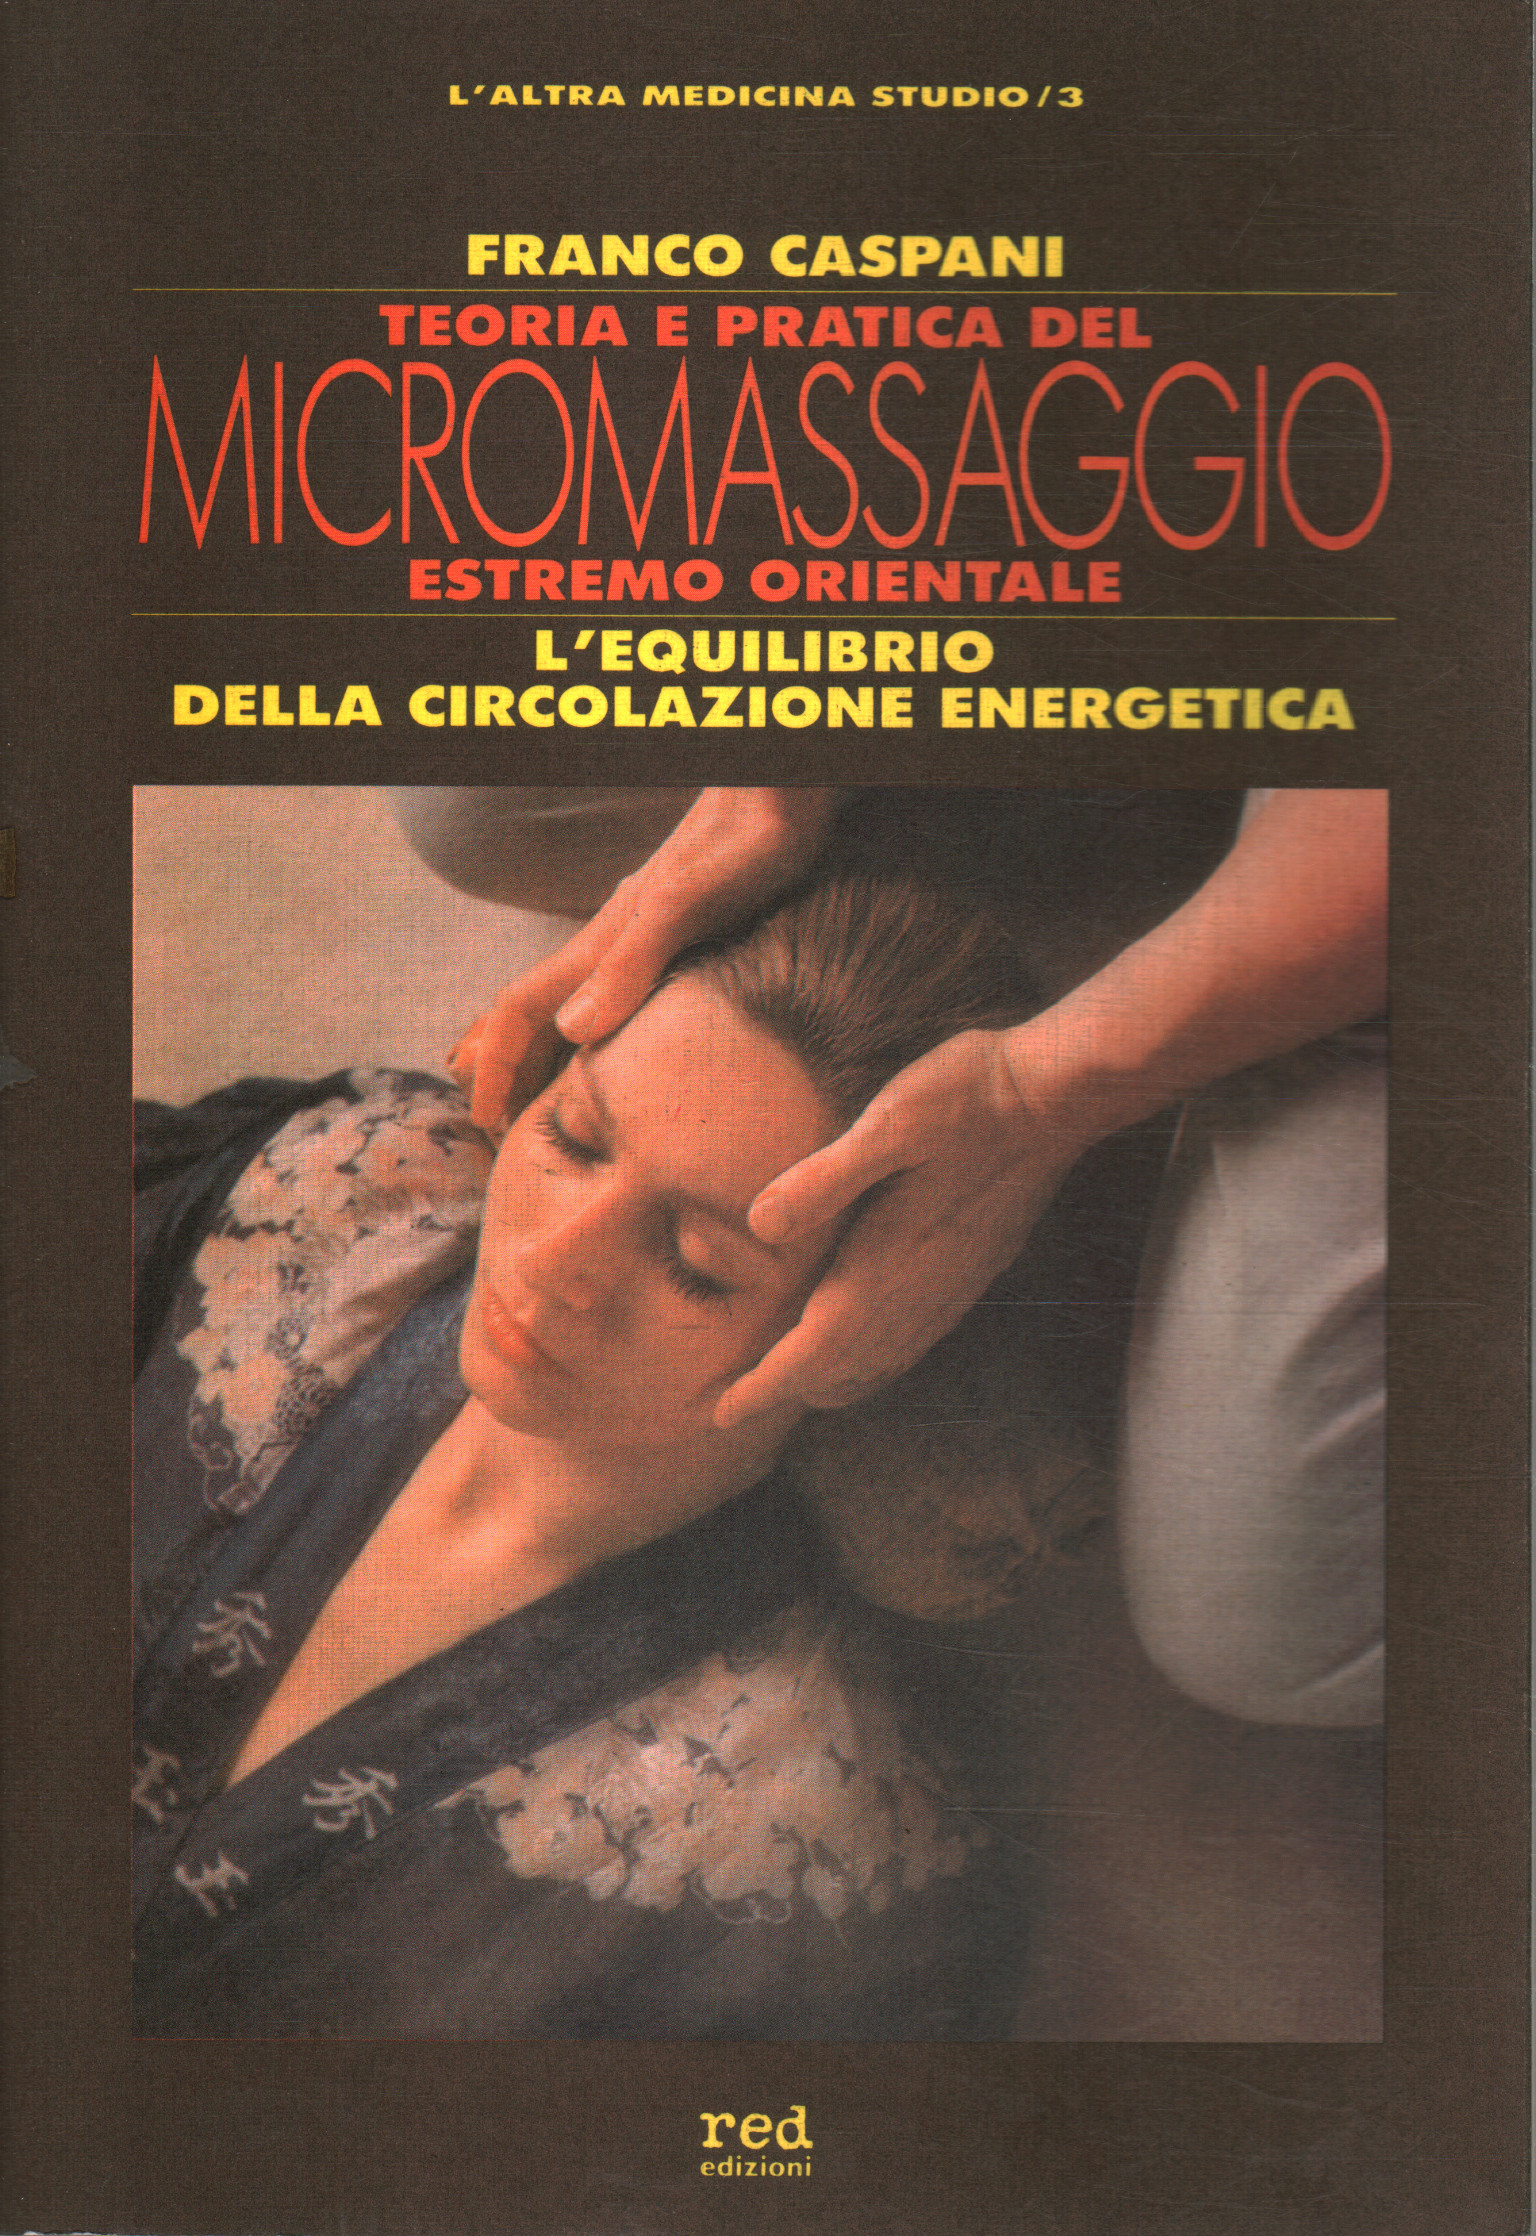 Teoría y práctica del micro masaje oriental extremo, Franco Caspani